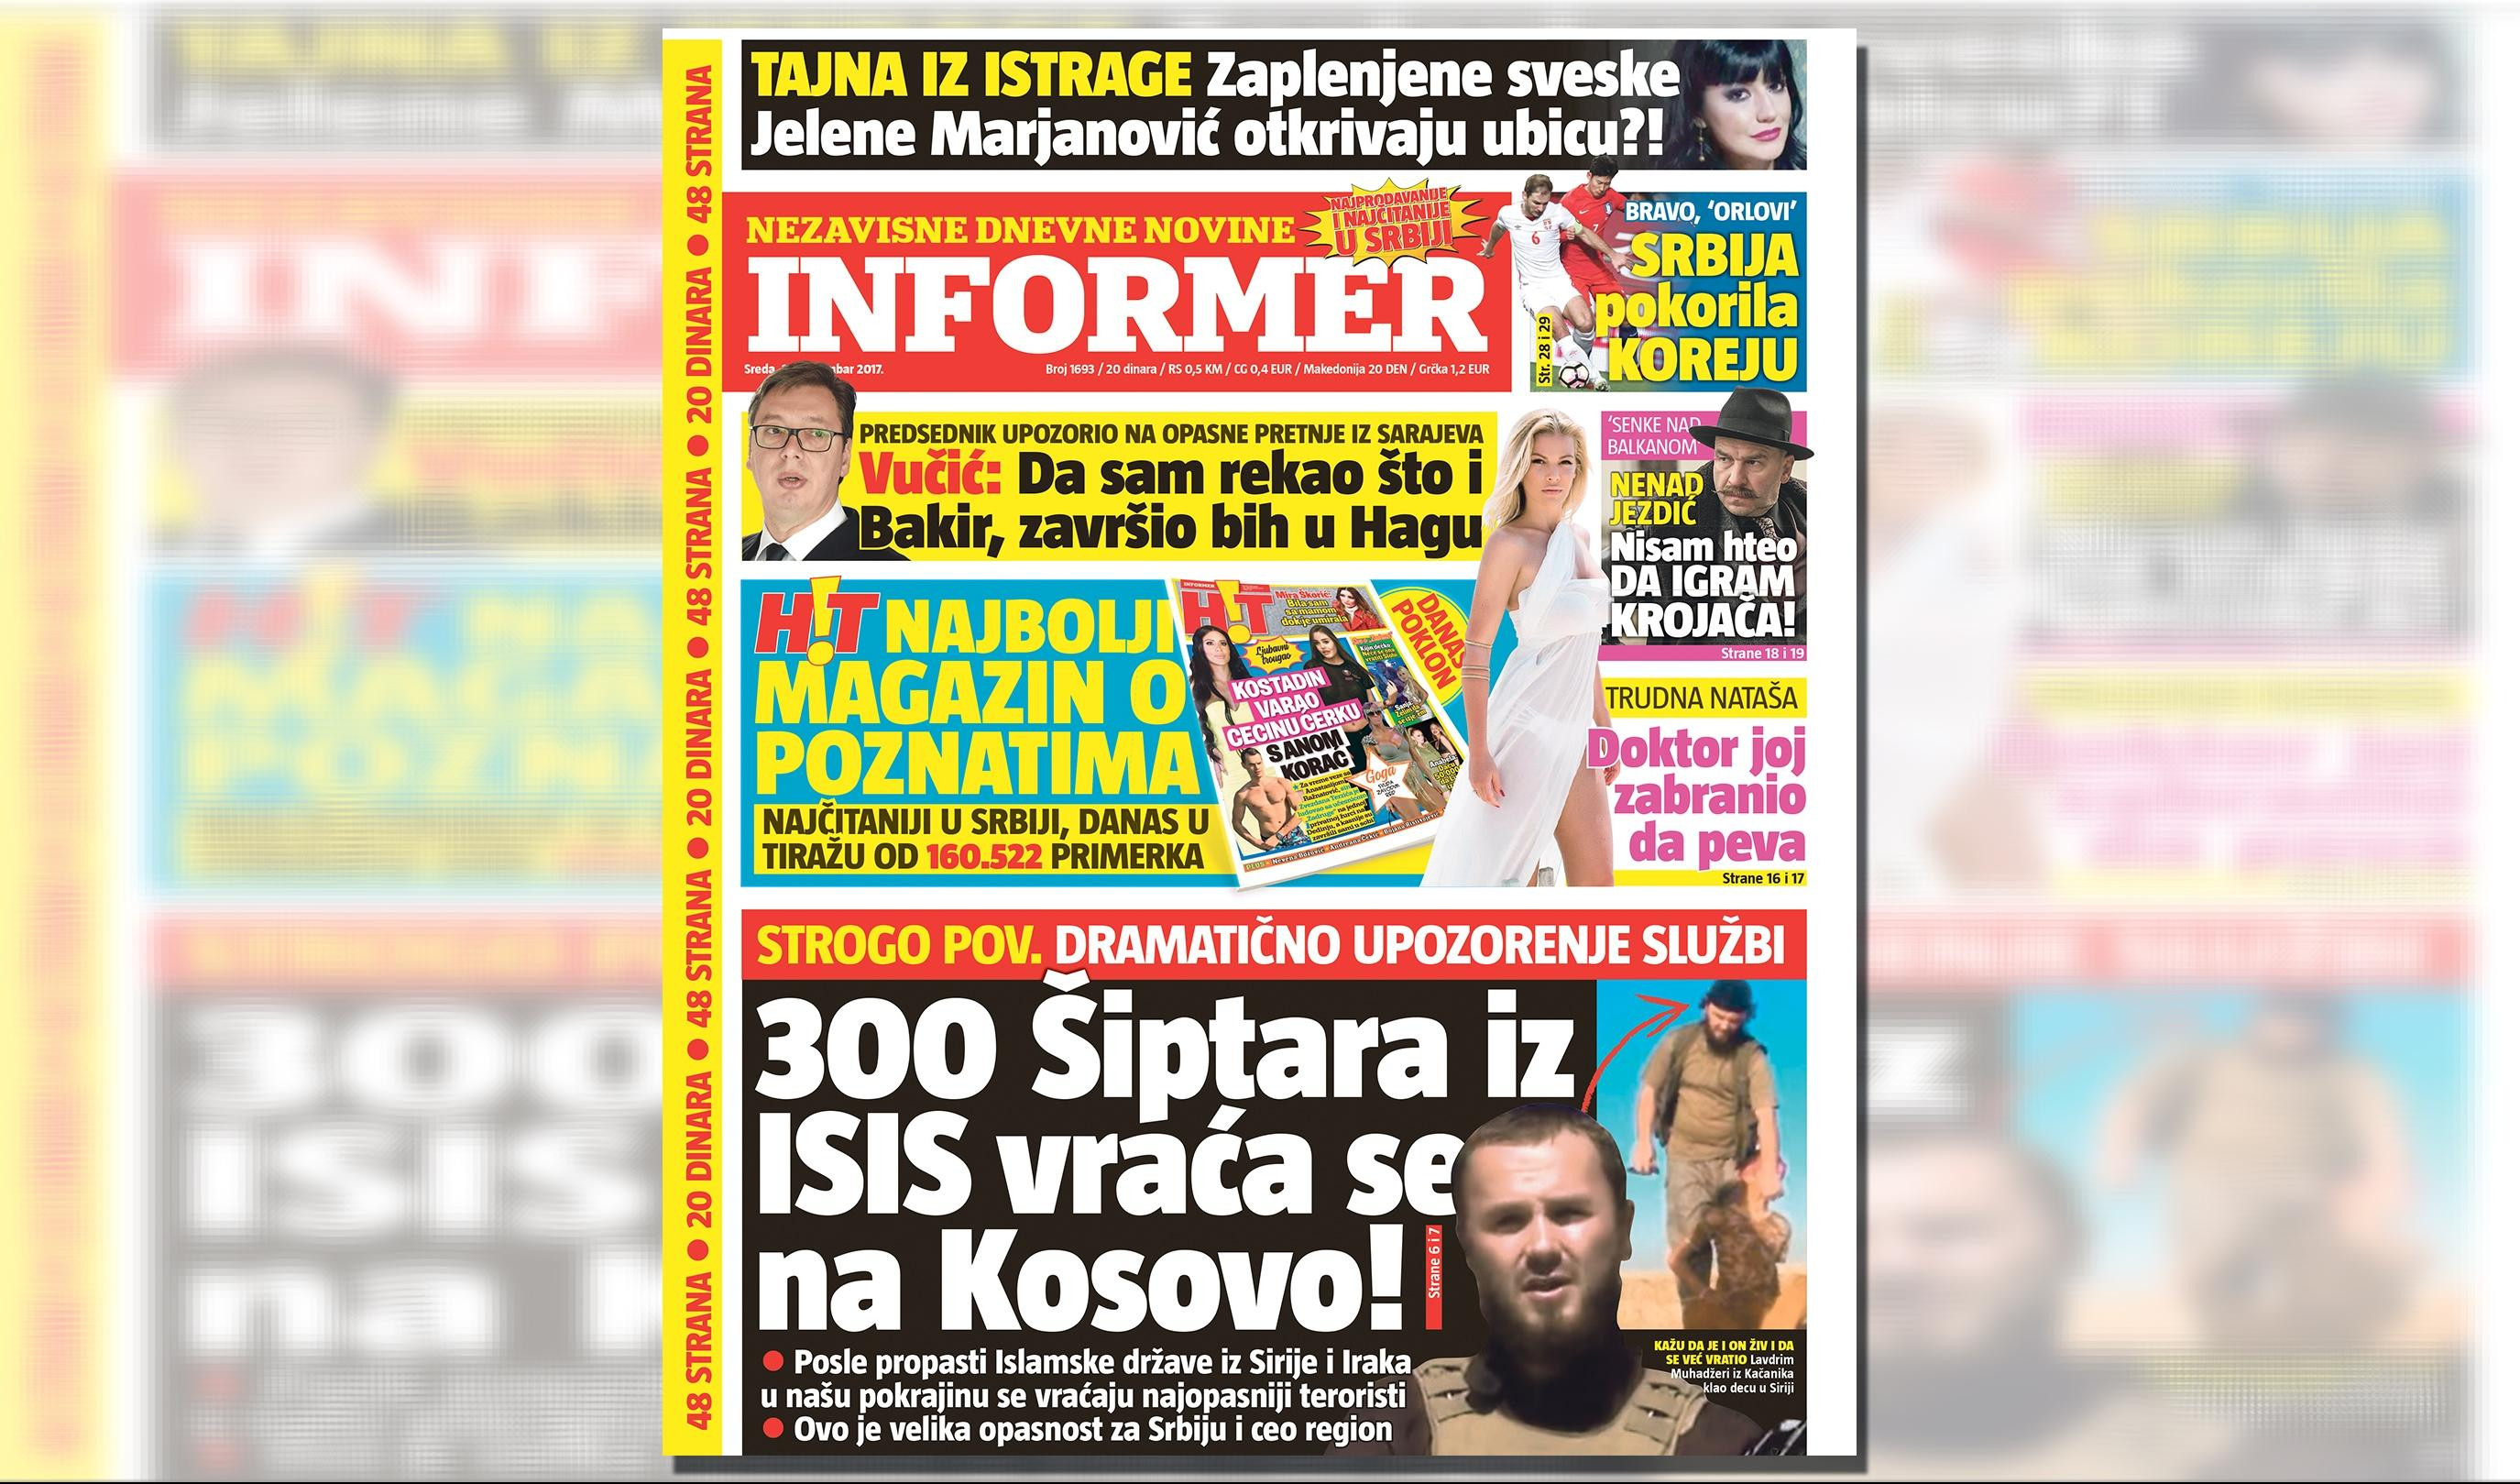 SAMO U DANAŠNJEM INFORMERU: DRAMATIČNO UPOZORENJE! 300 Šiptara iz ISIS se vraća na Kosovo!